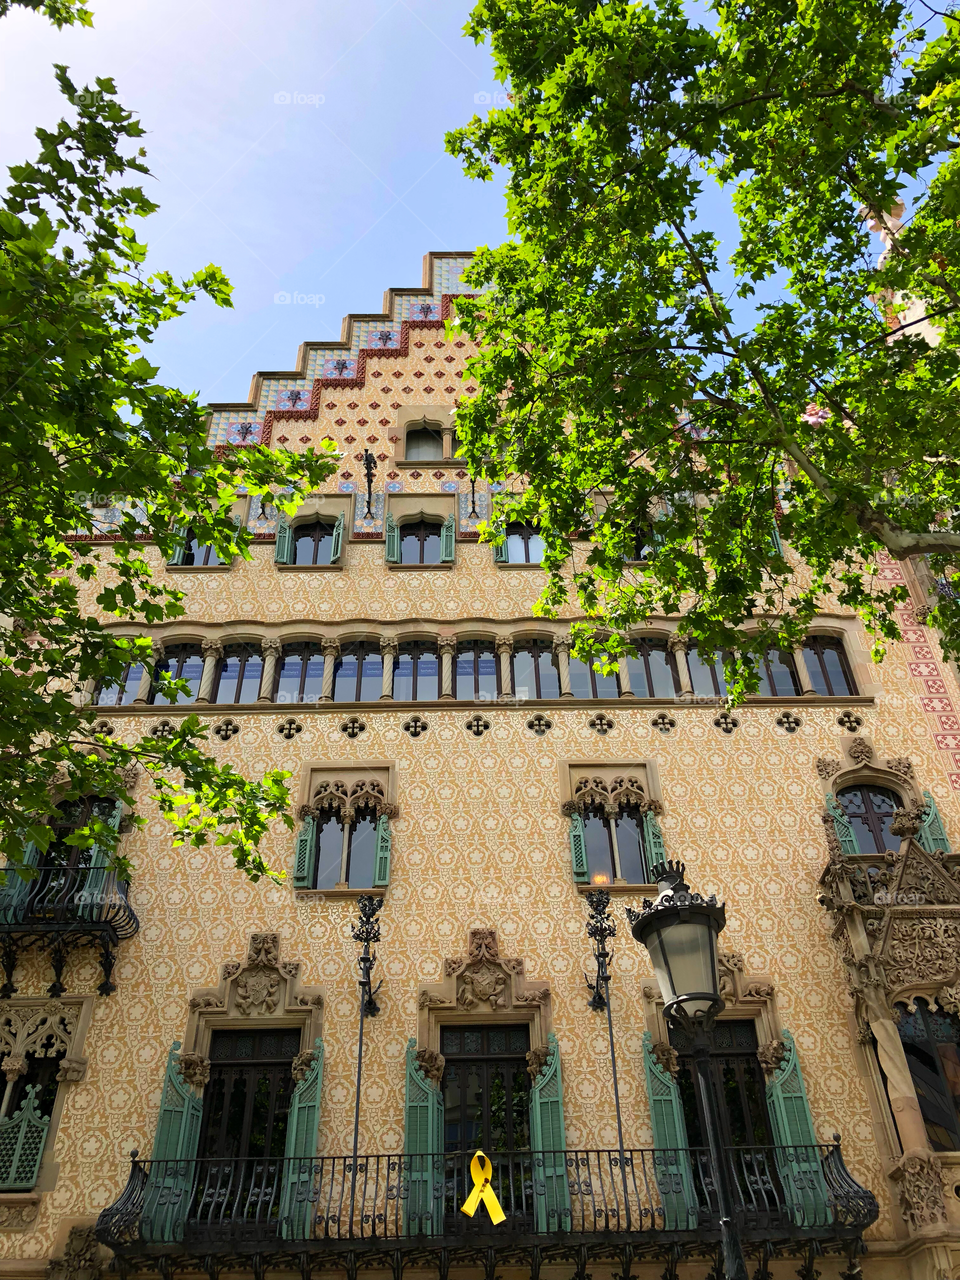 Casa amatller in Barcelona. Great Venetian style facade.